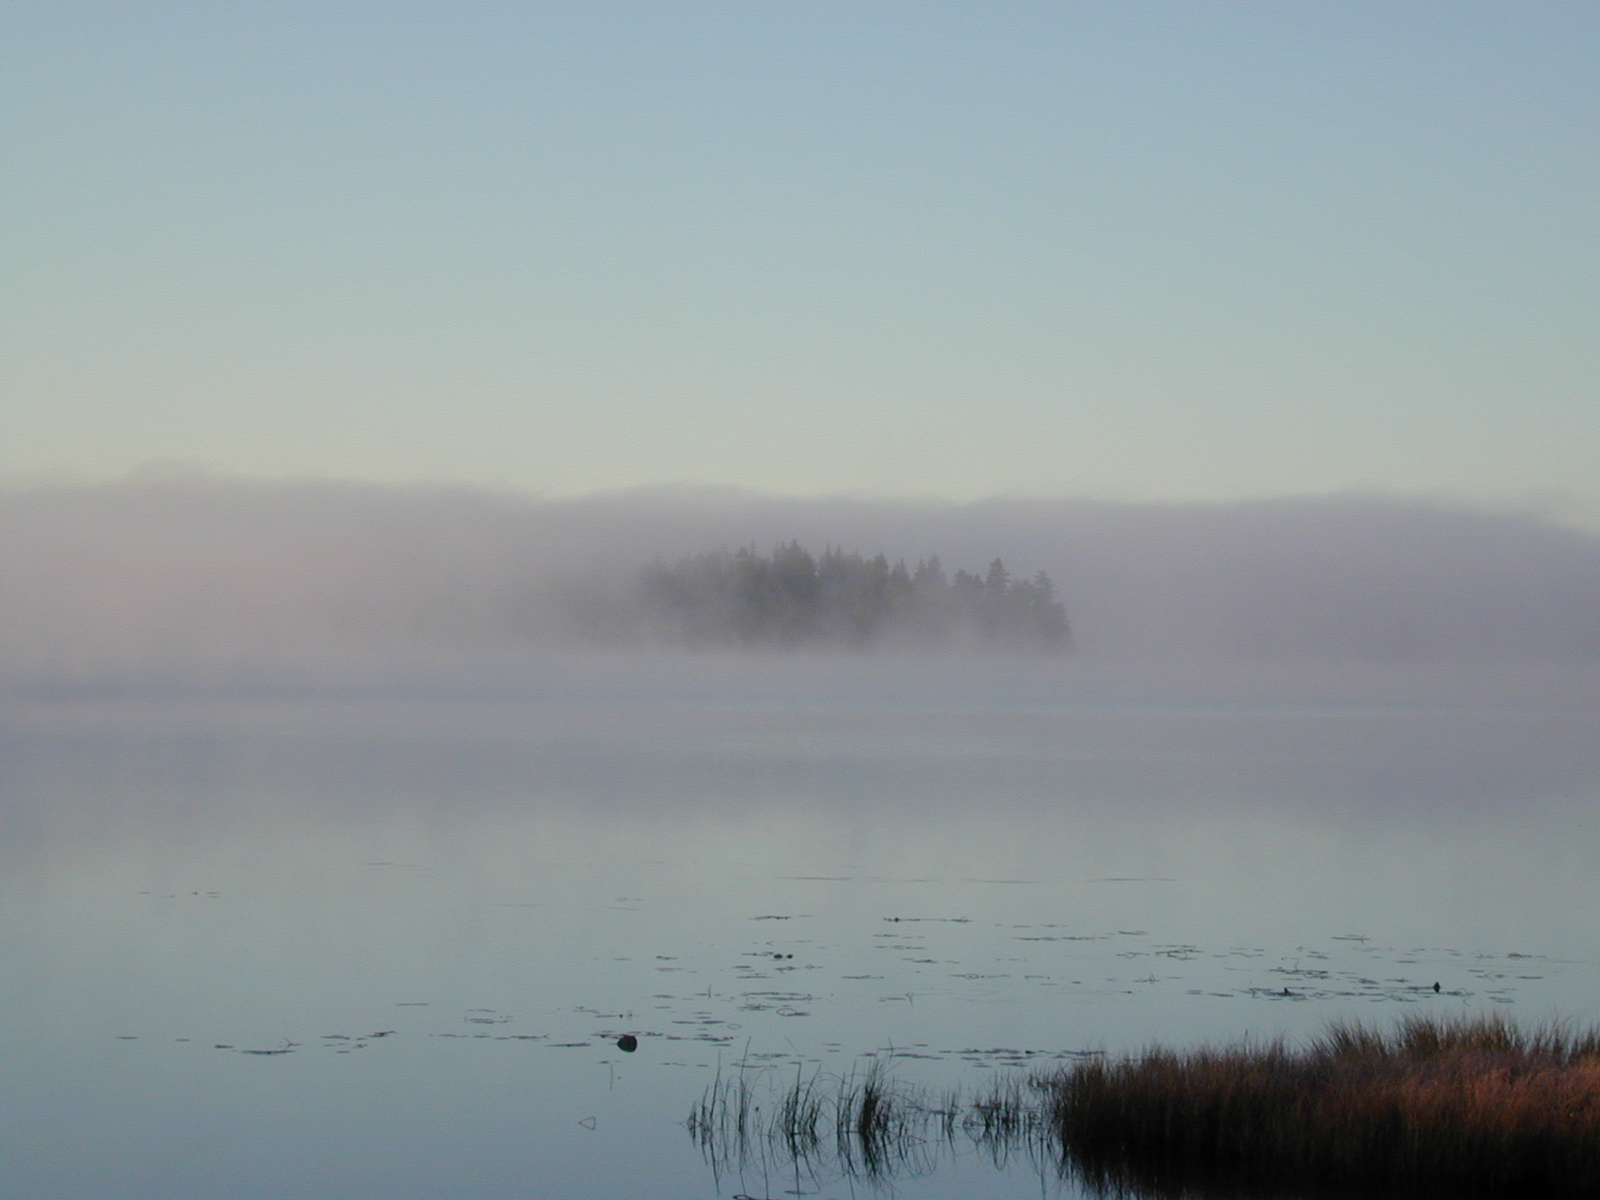 Seenlandschaft Mittelschweden
Sachte umhüllt ein feiner Nebel die Landschaft am Teich.
Herbst in Mittelschweden, irgendwo - nirgendwo?
